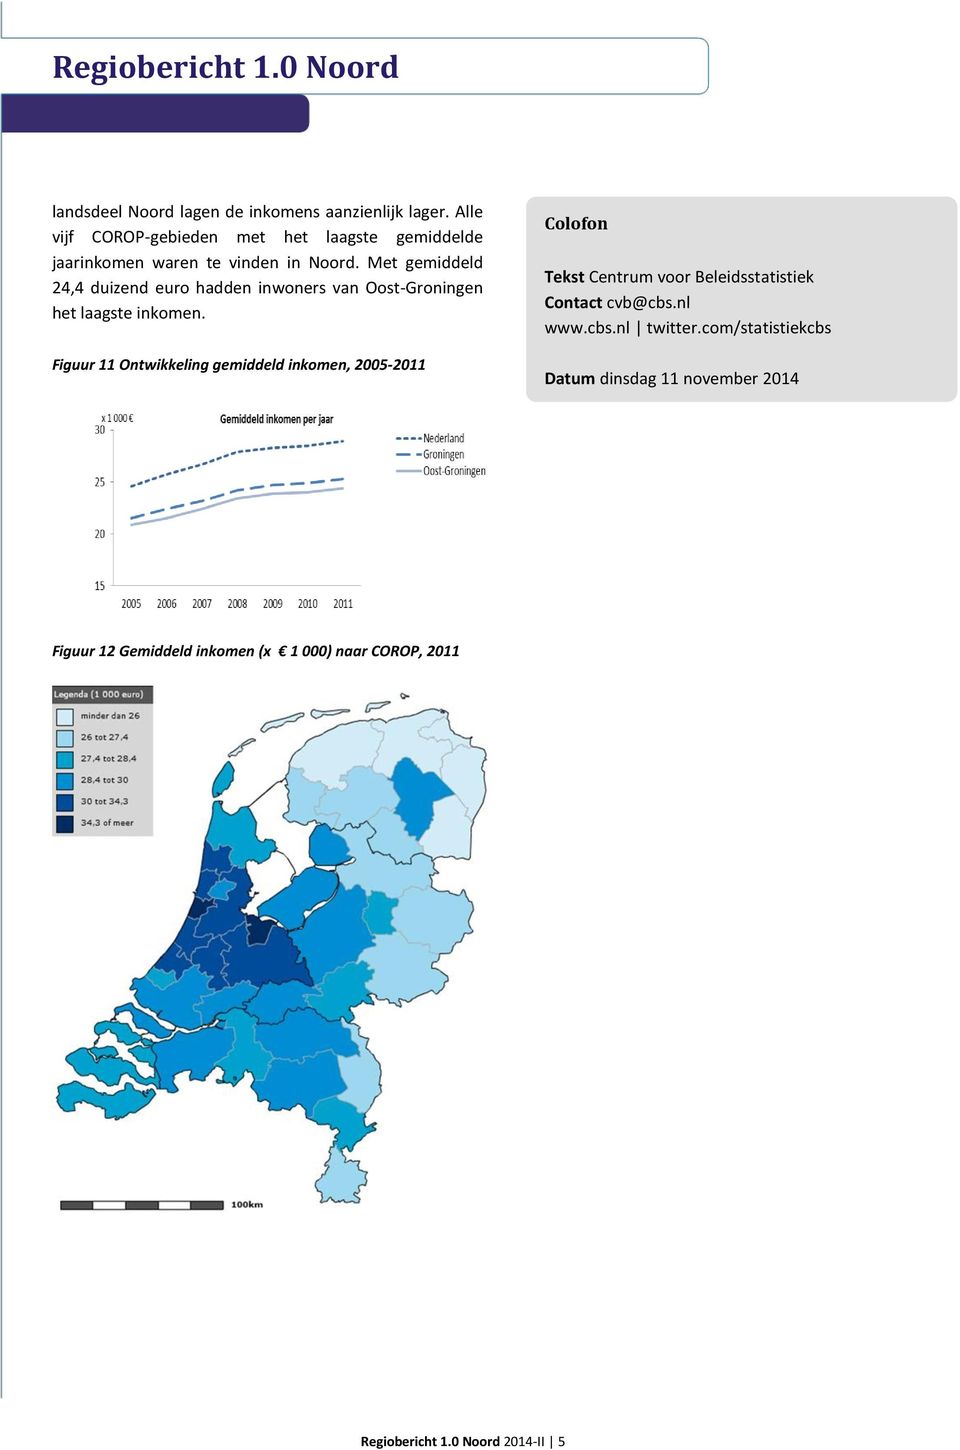 Met gemiddeld 24,4 duizend euro hadden inwoners van Oost-Groningen het laagste inkomen.